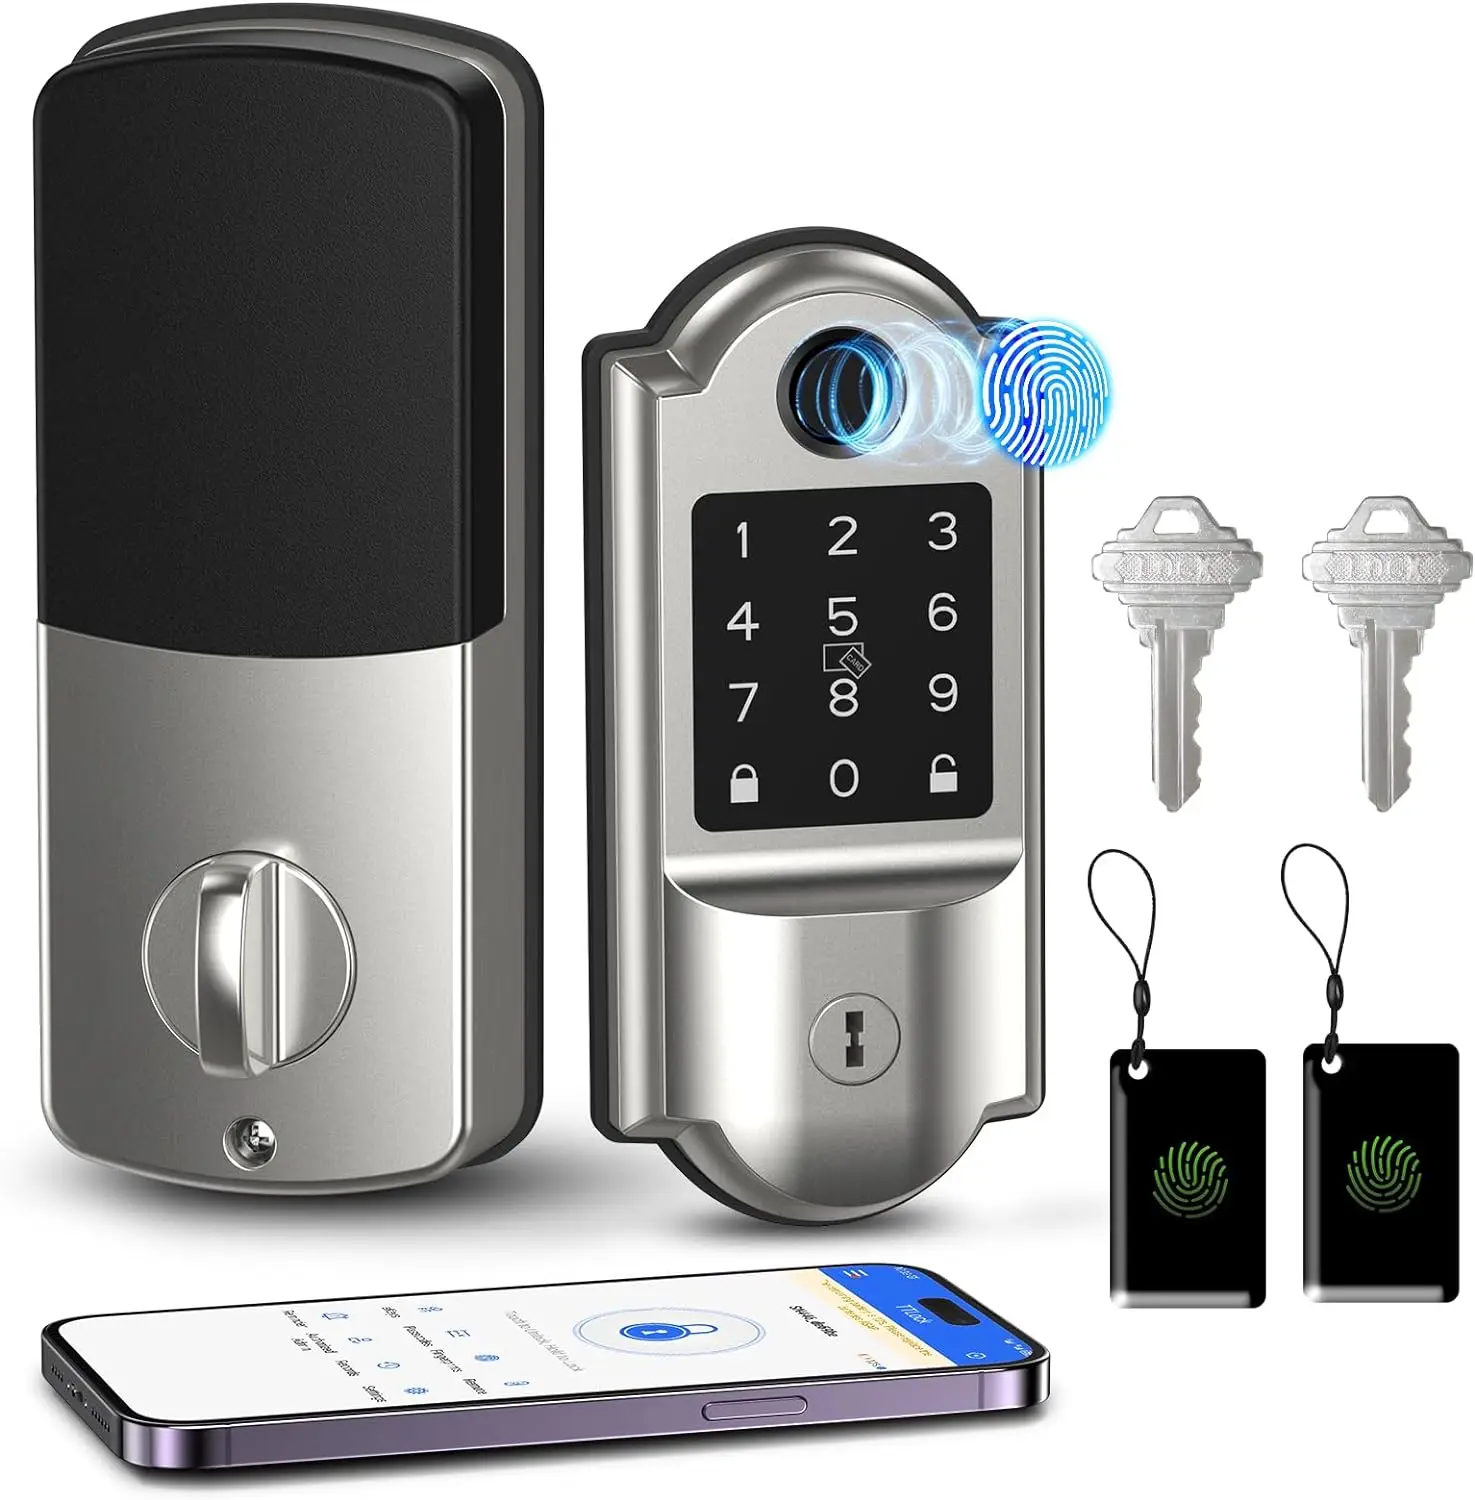 

Умный Замок, дверной замок со сканером отпечатков пальцев и сенсорной клавиатурой, Wi-Fi, умный дверной замок с Bluetooth, дистанционным управлением через приложение